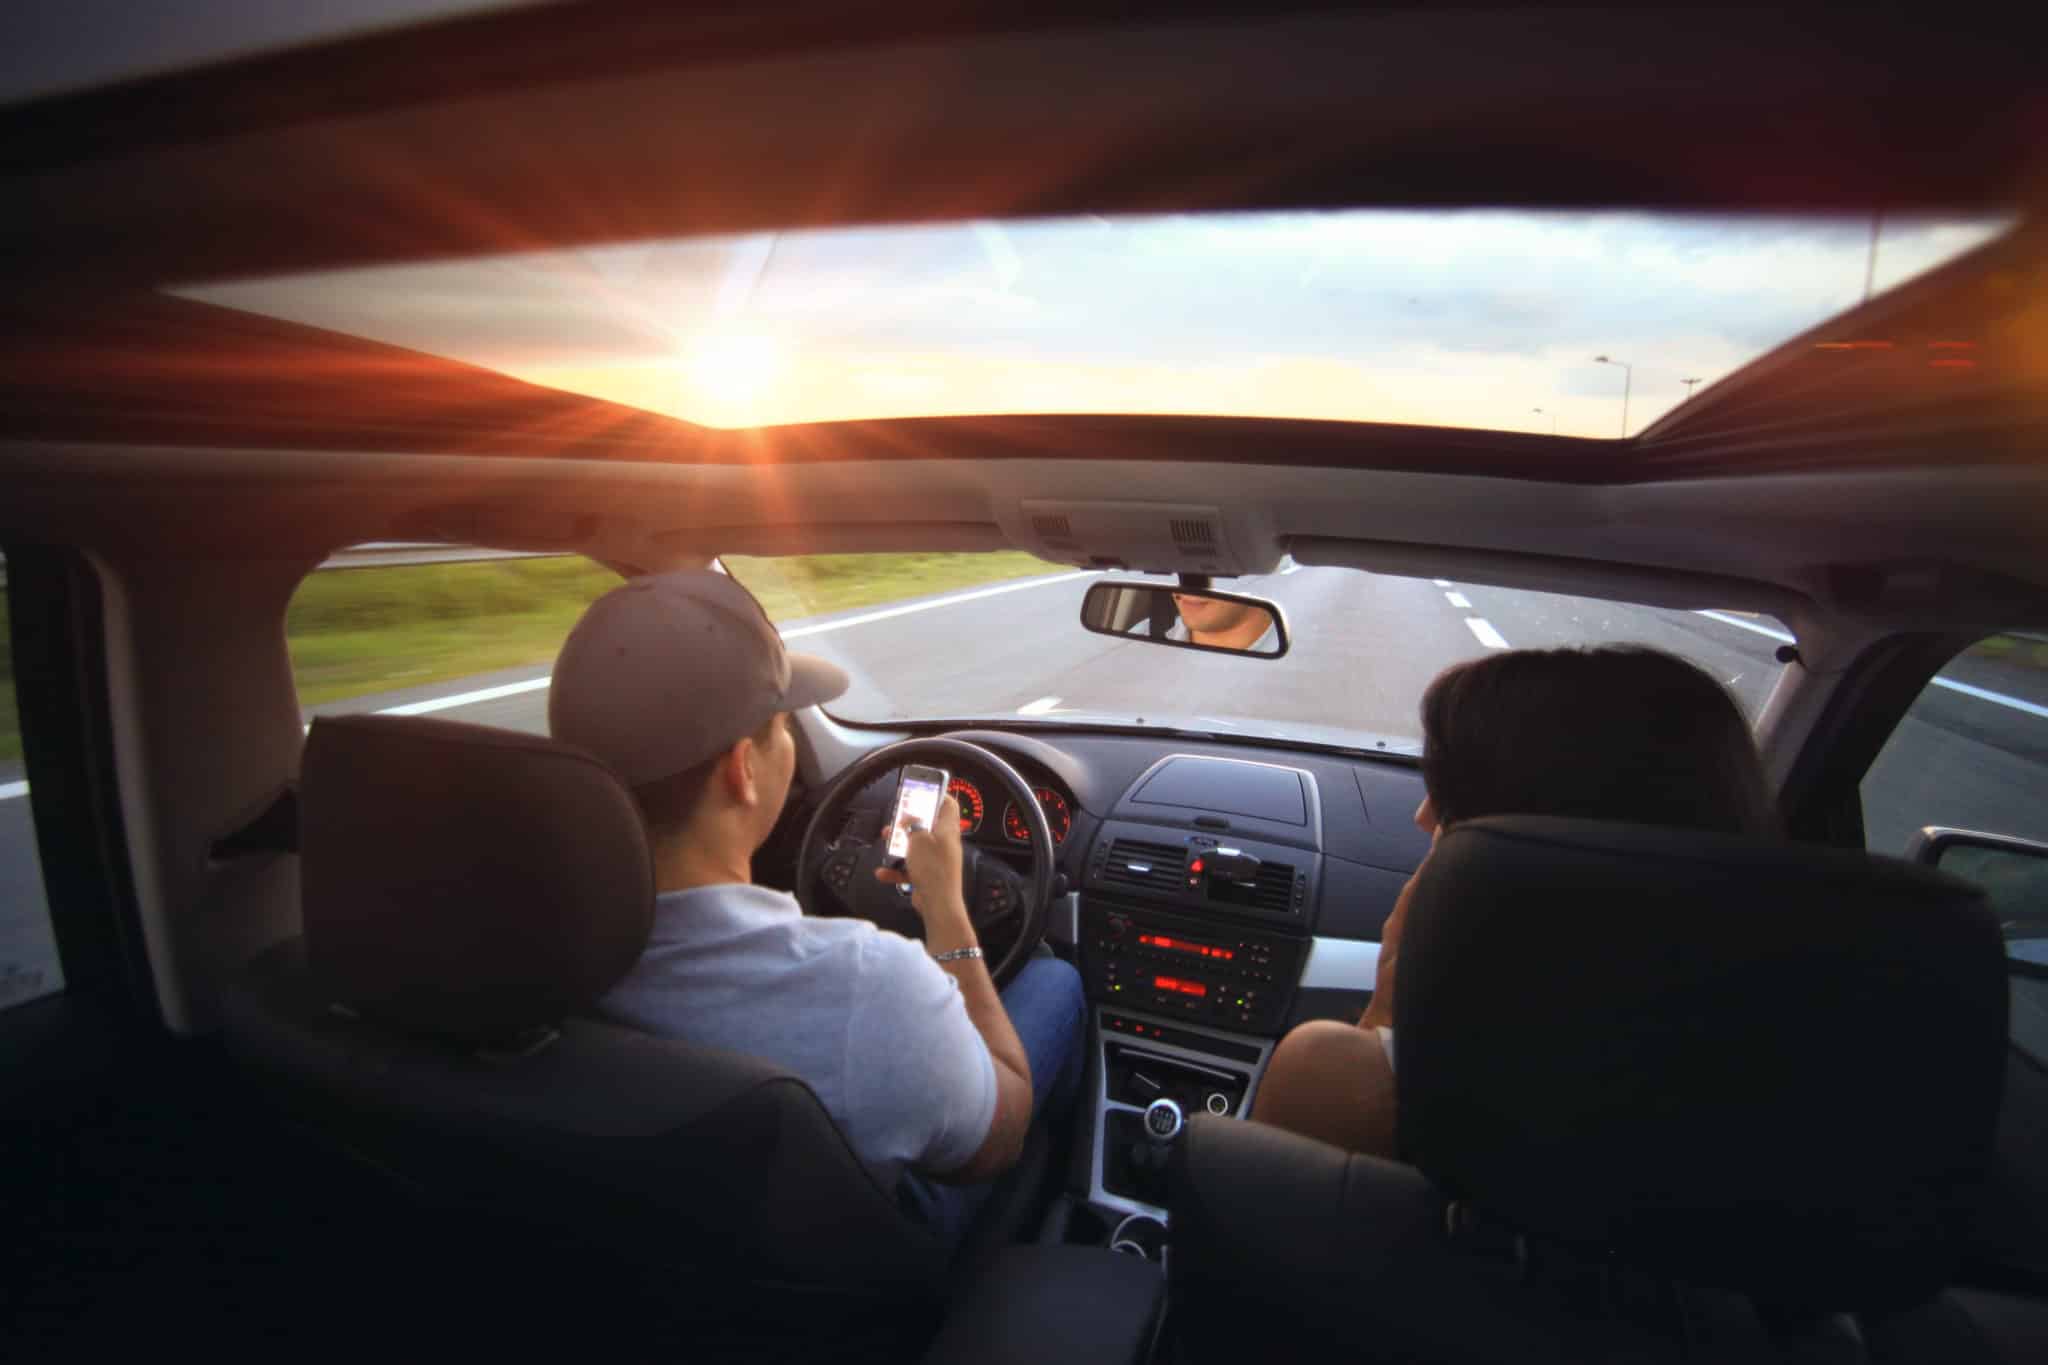 distracted drivers in their teens in Utah